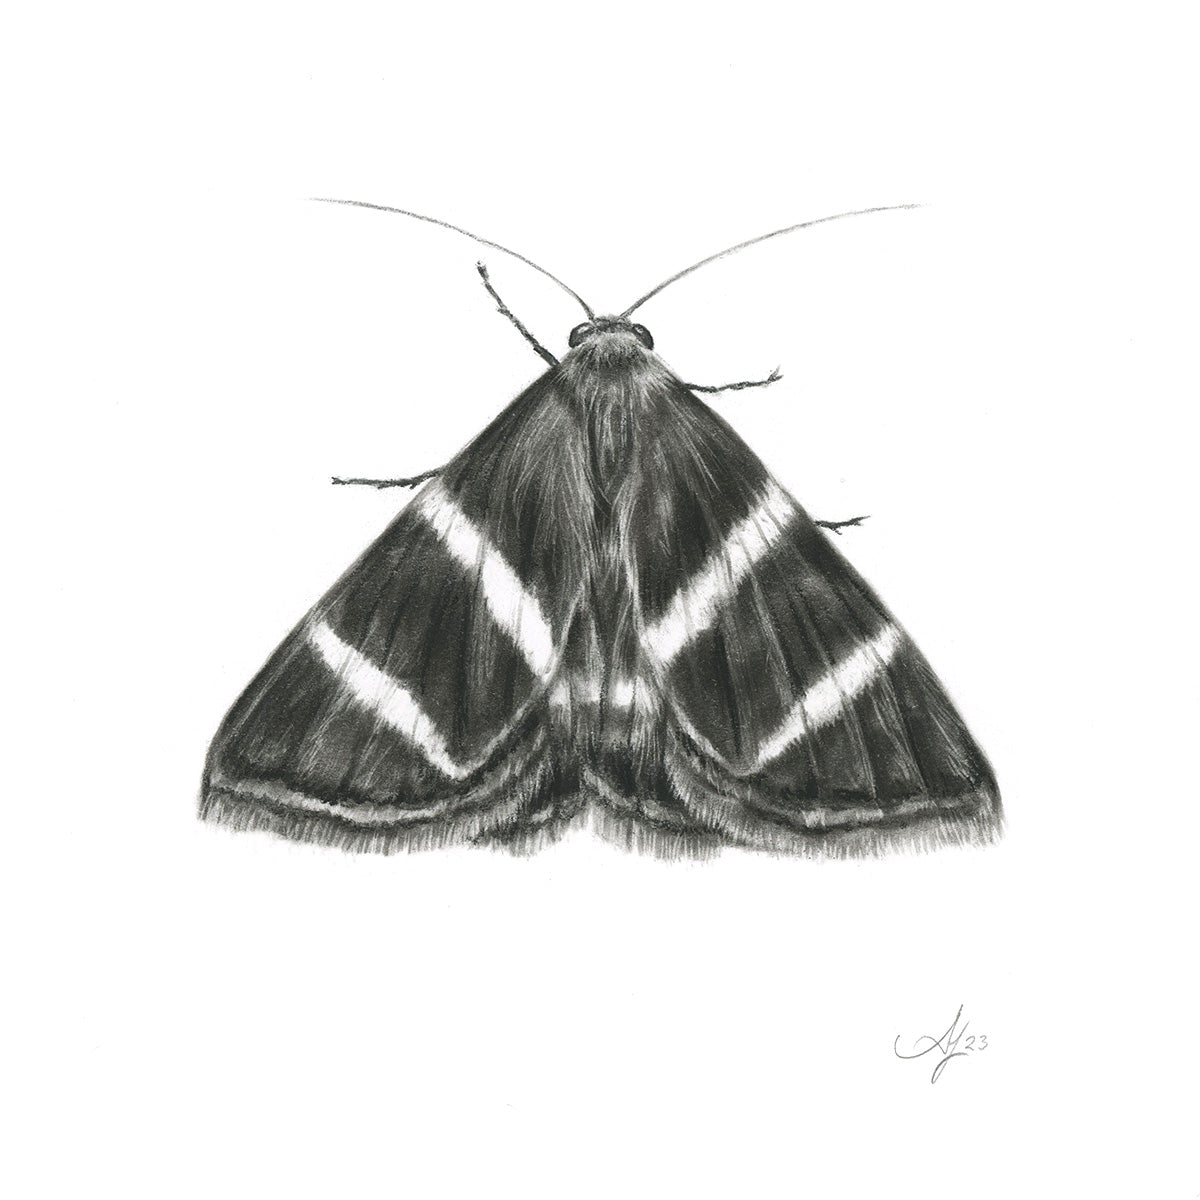 Rectangular-striped Noctuid Moth